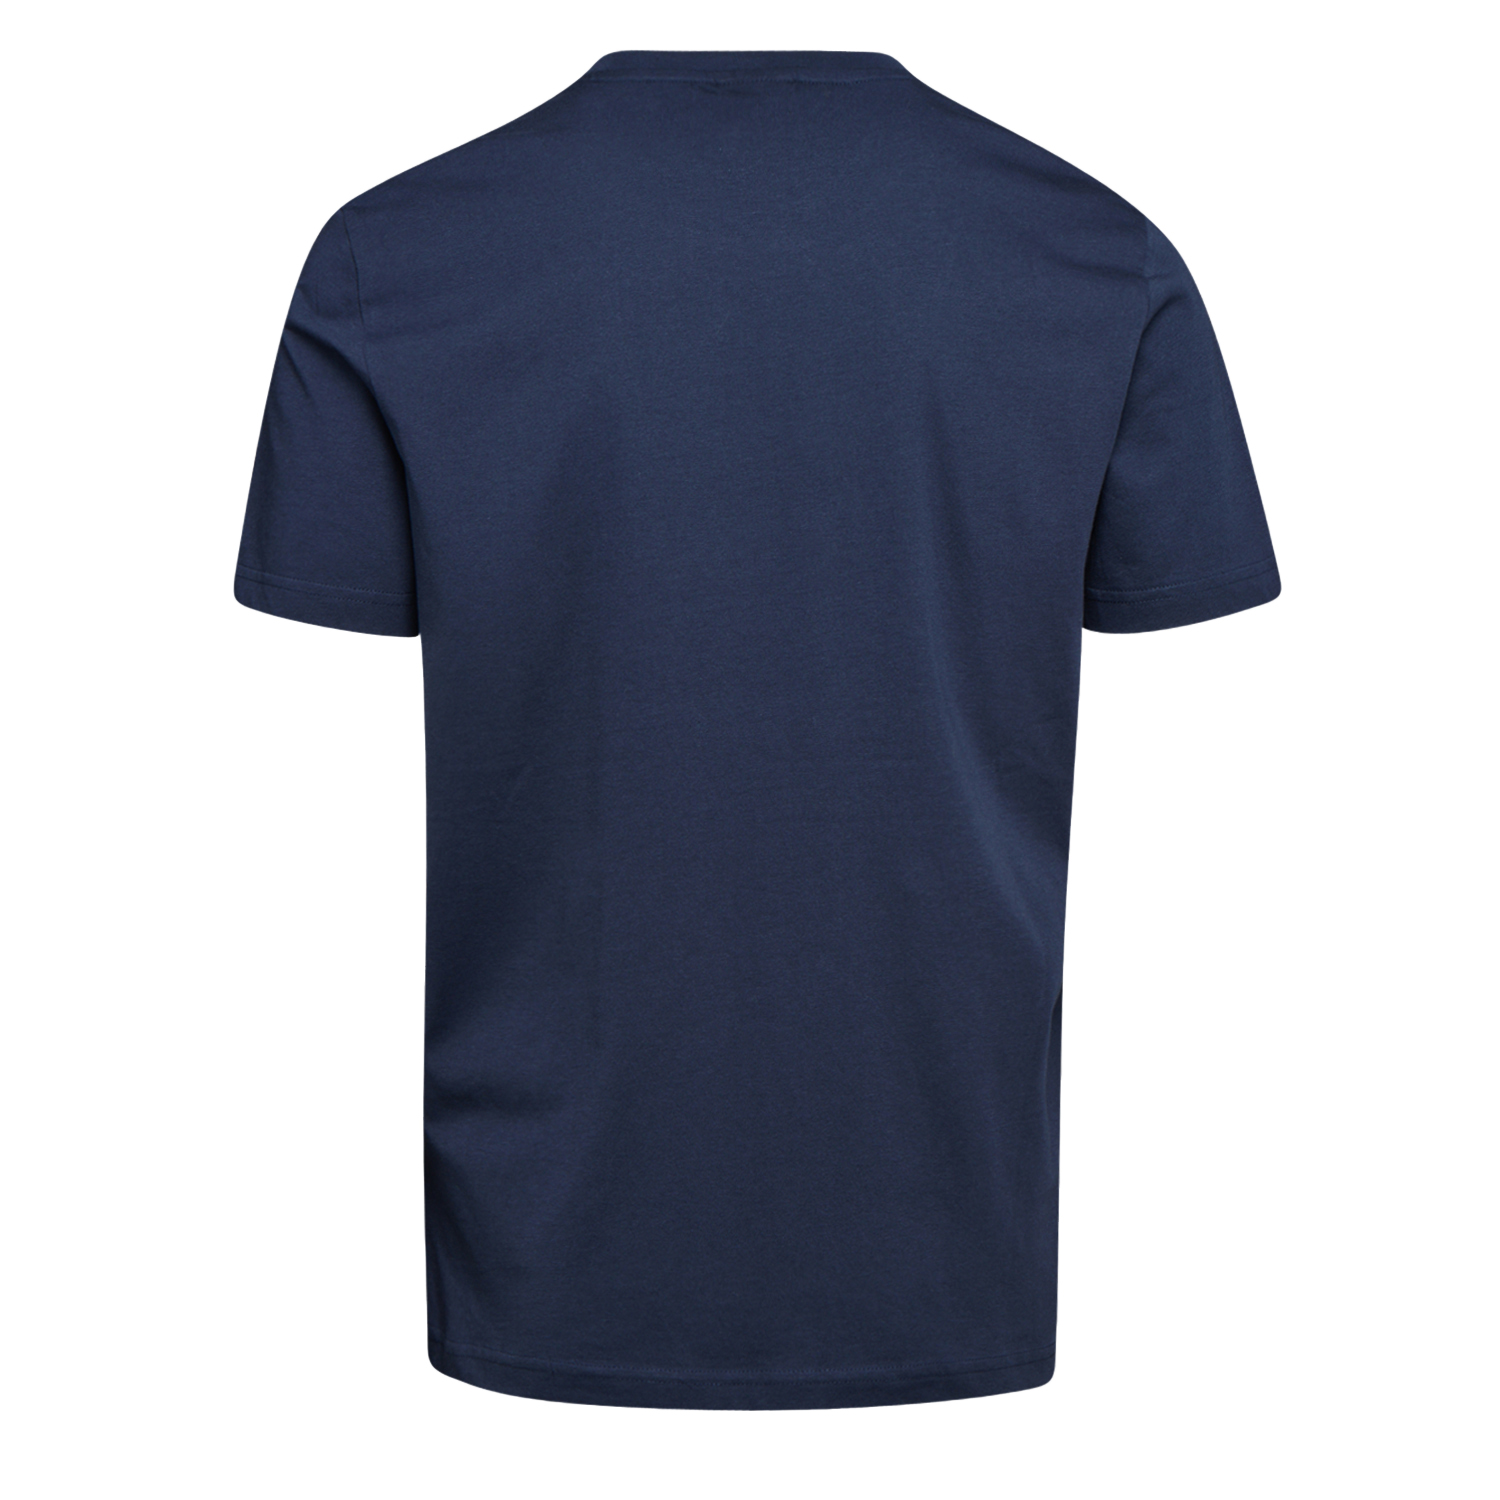 Tee-shirt de travail GRAPHIC ORGANIC à manches courtes bleu marine TXL - DIADORA SPA - 702.176914